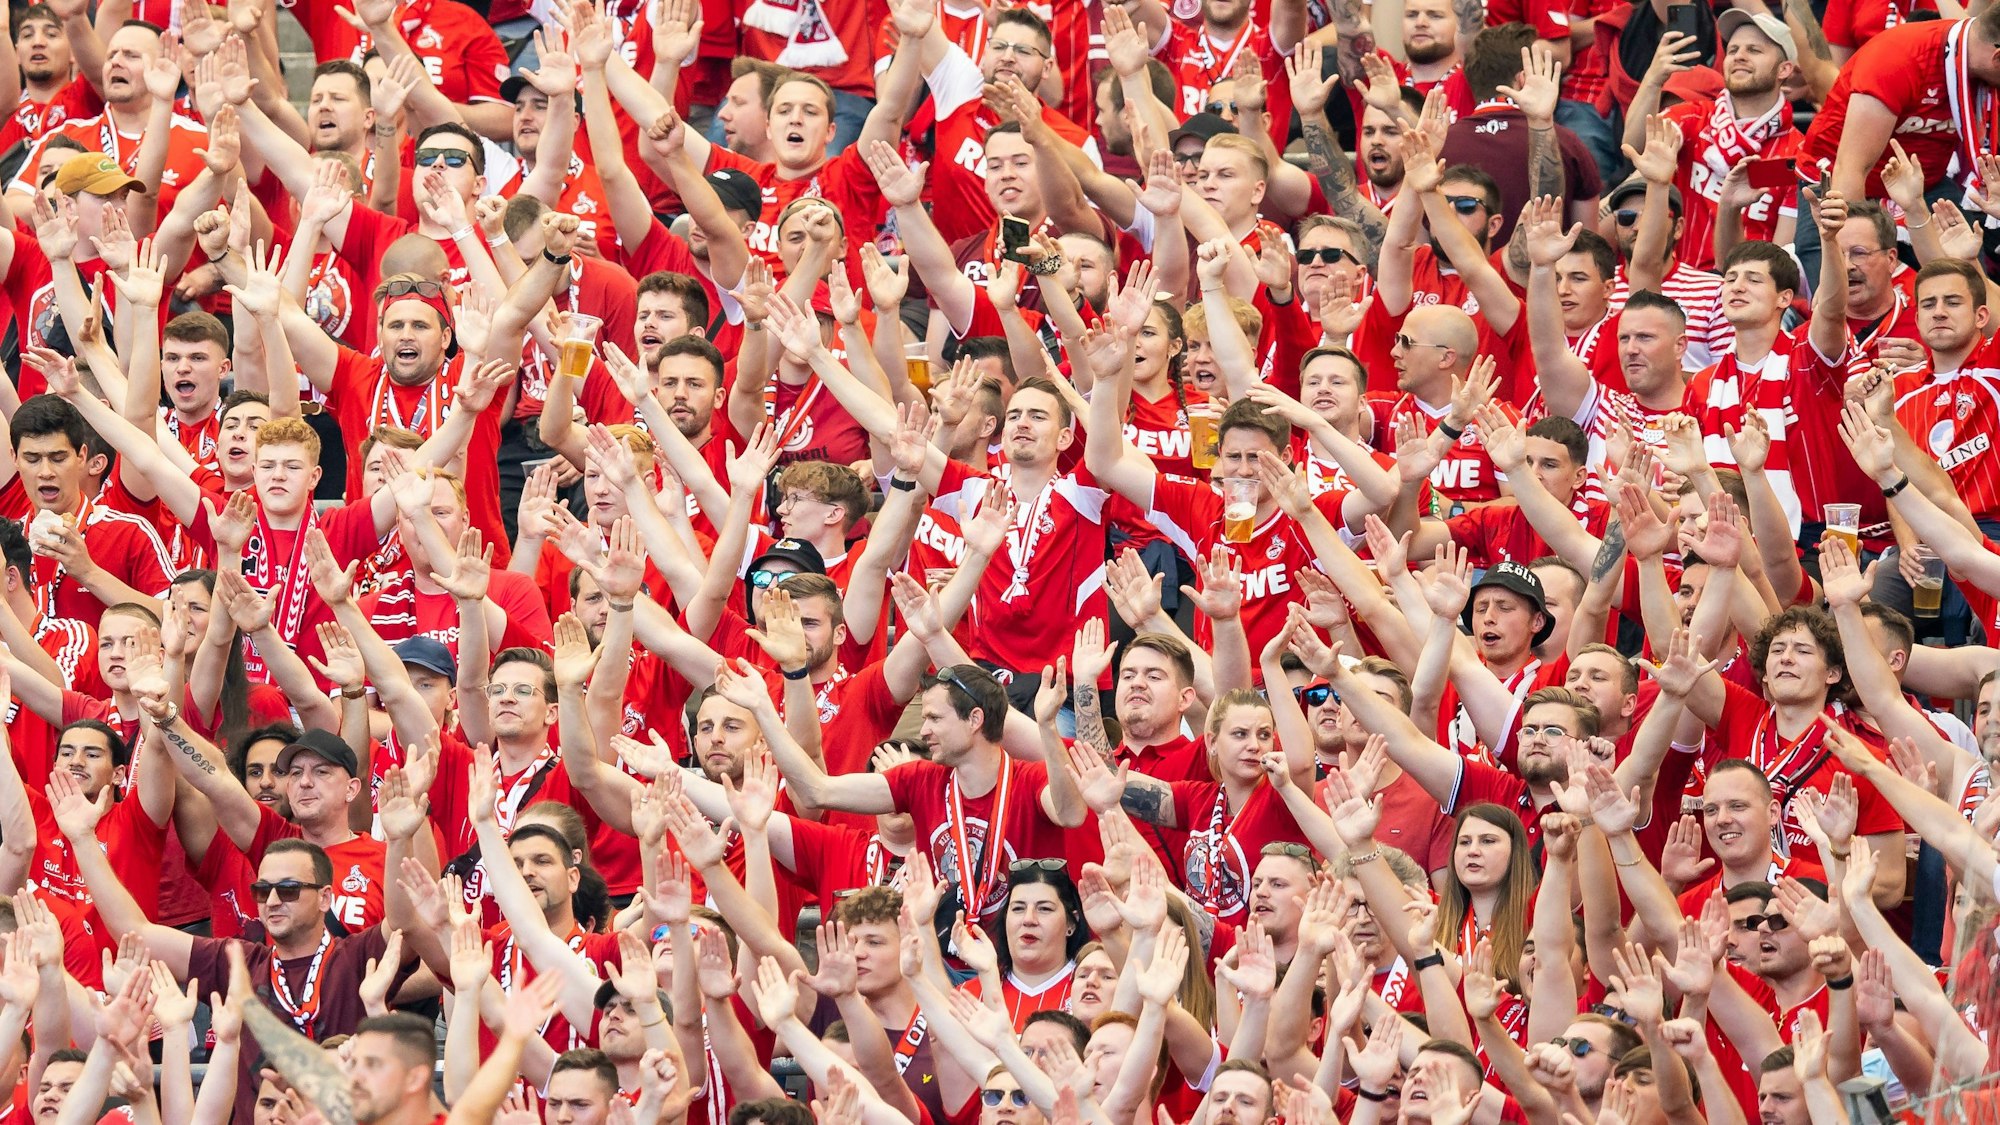 Die Fans im Gästeblock des 1. FC Köln sind in rot gekleidet.